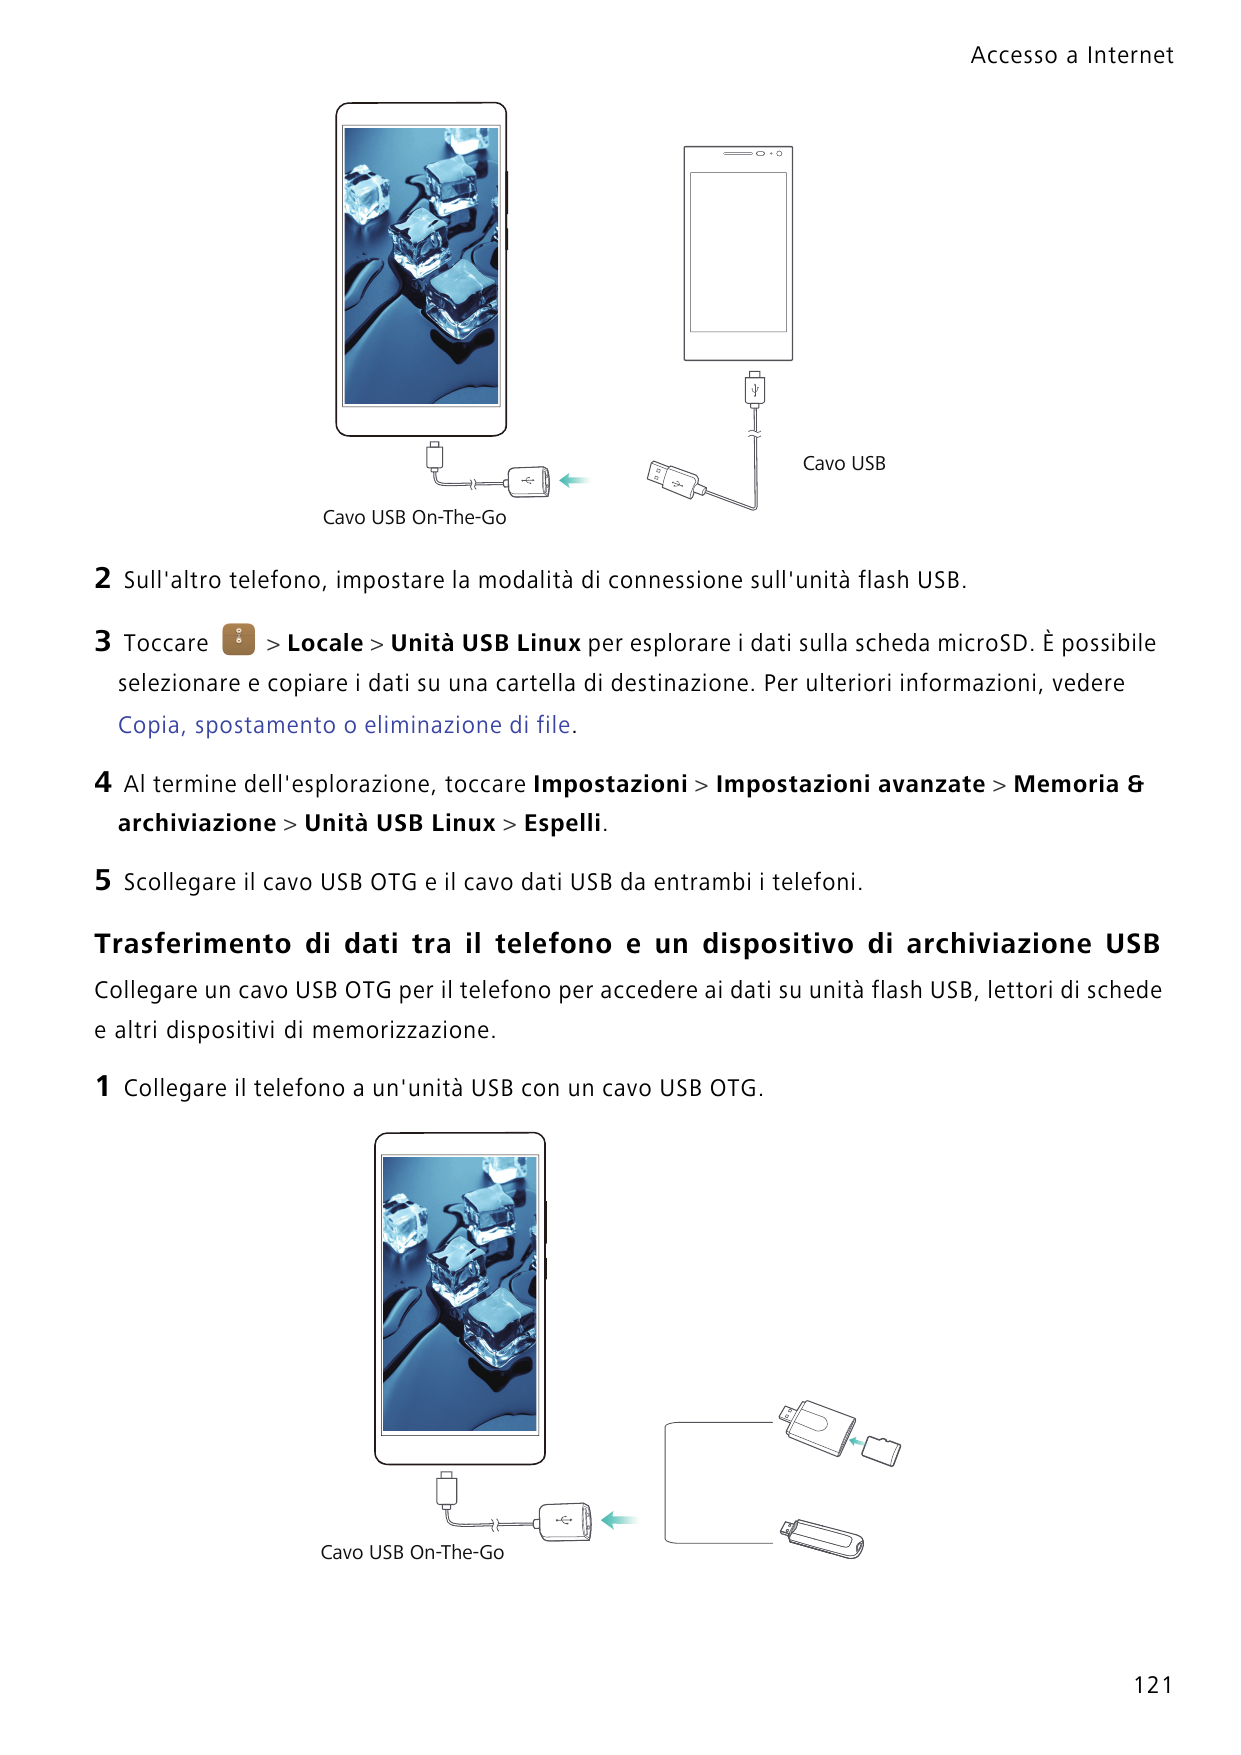 Accesso a InternetCavo USBCavo USB On-The-Go2Sull'altro telefono, impostare la modalità di connessione sull'unità flash USB.3Toc